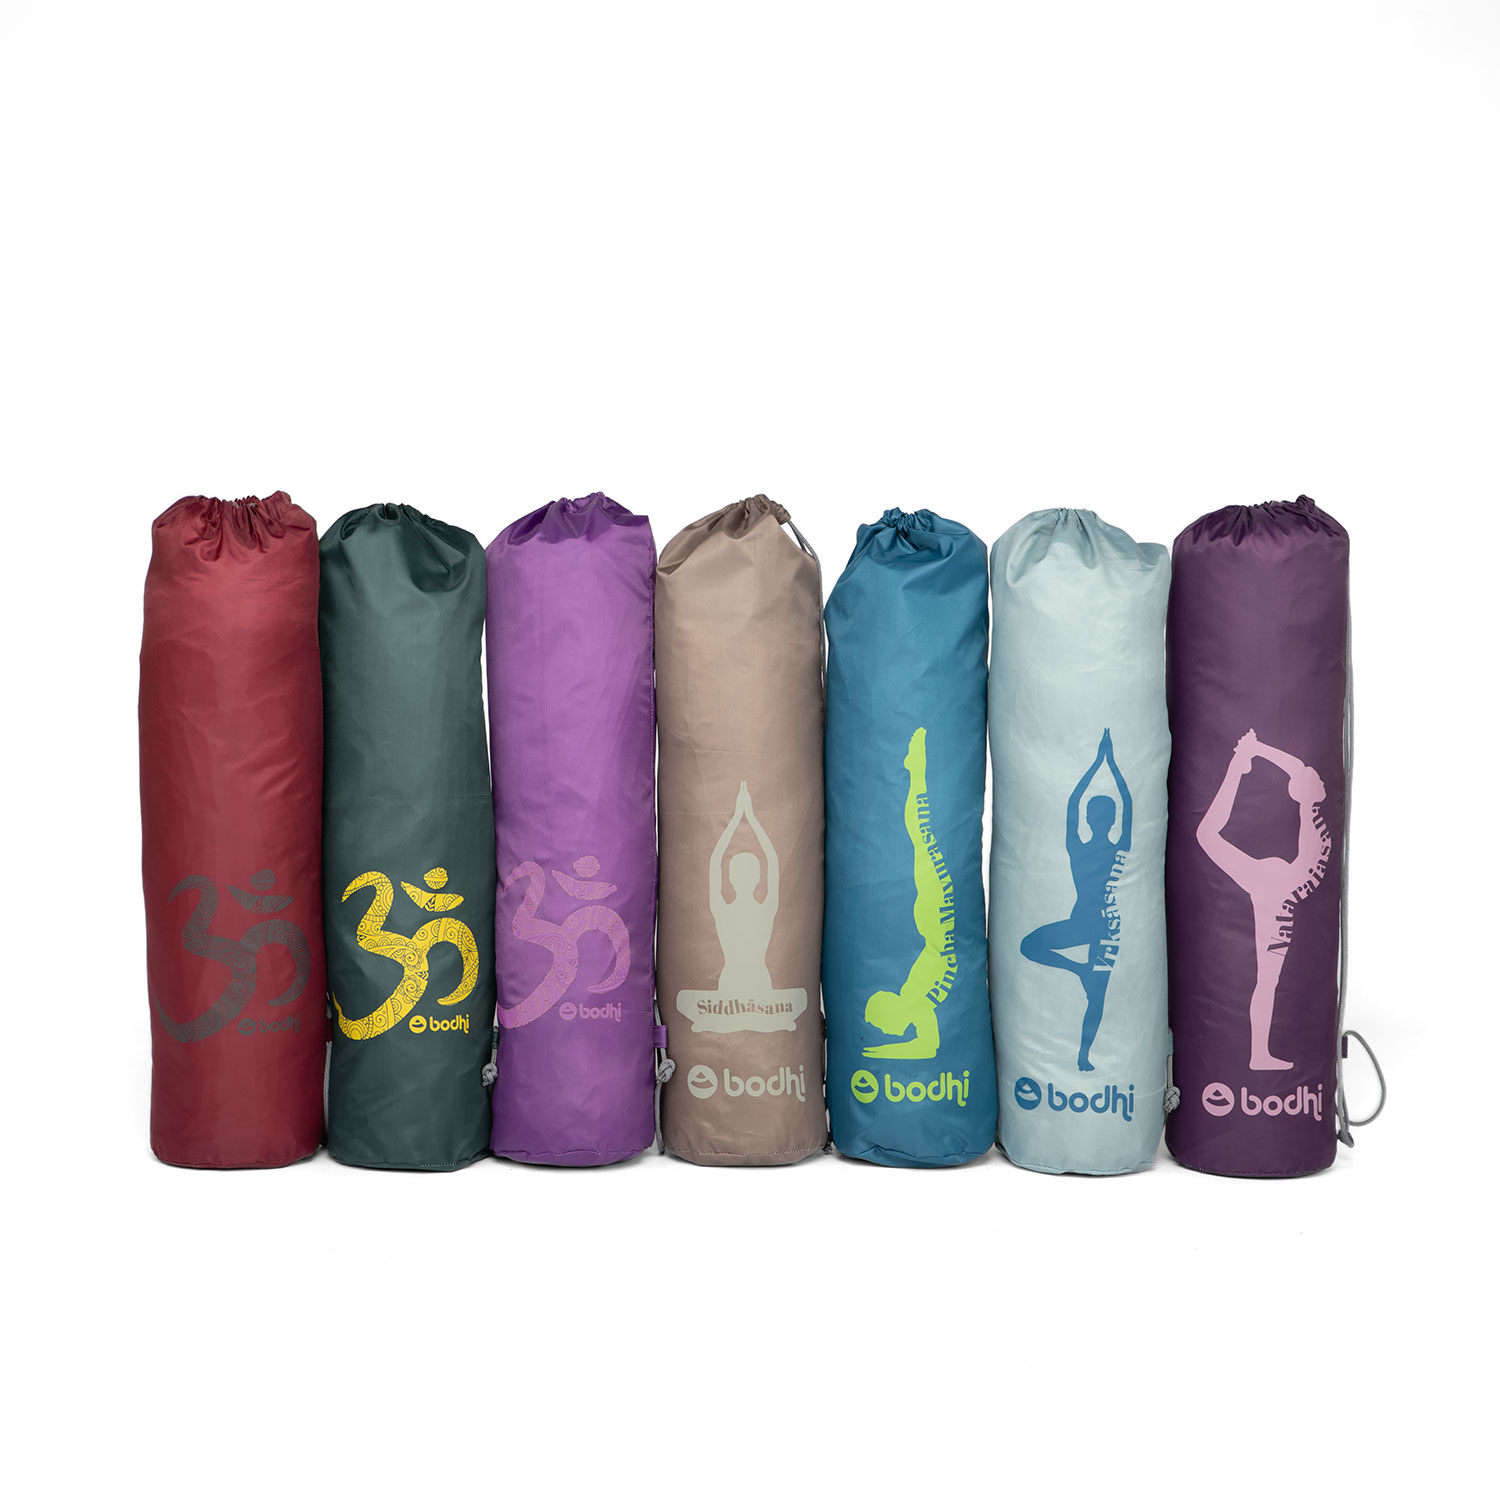 AROME Yoga Mat Bag, Waterproof Yoga Bag Mat Carrier Exercise Yoga